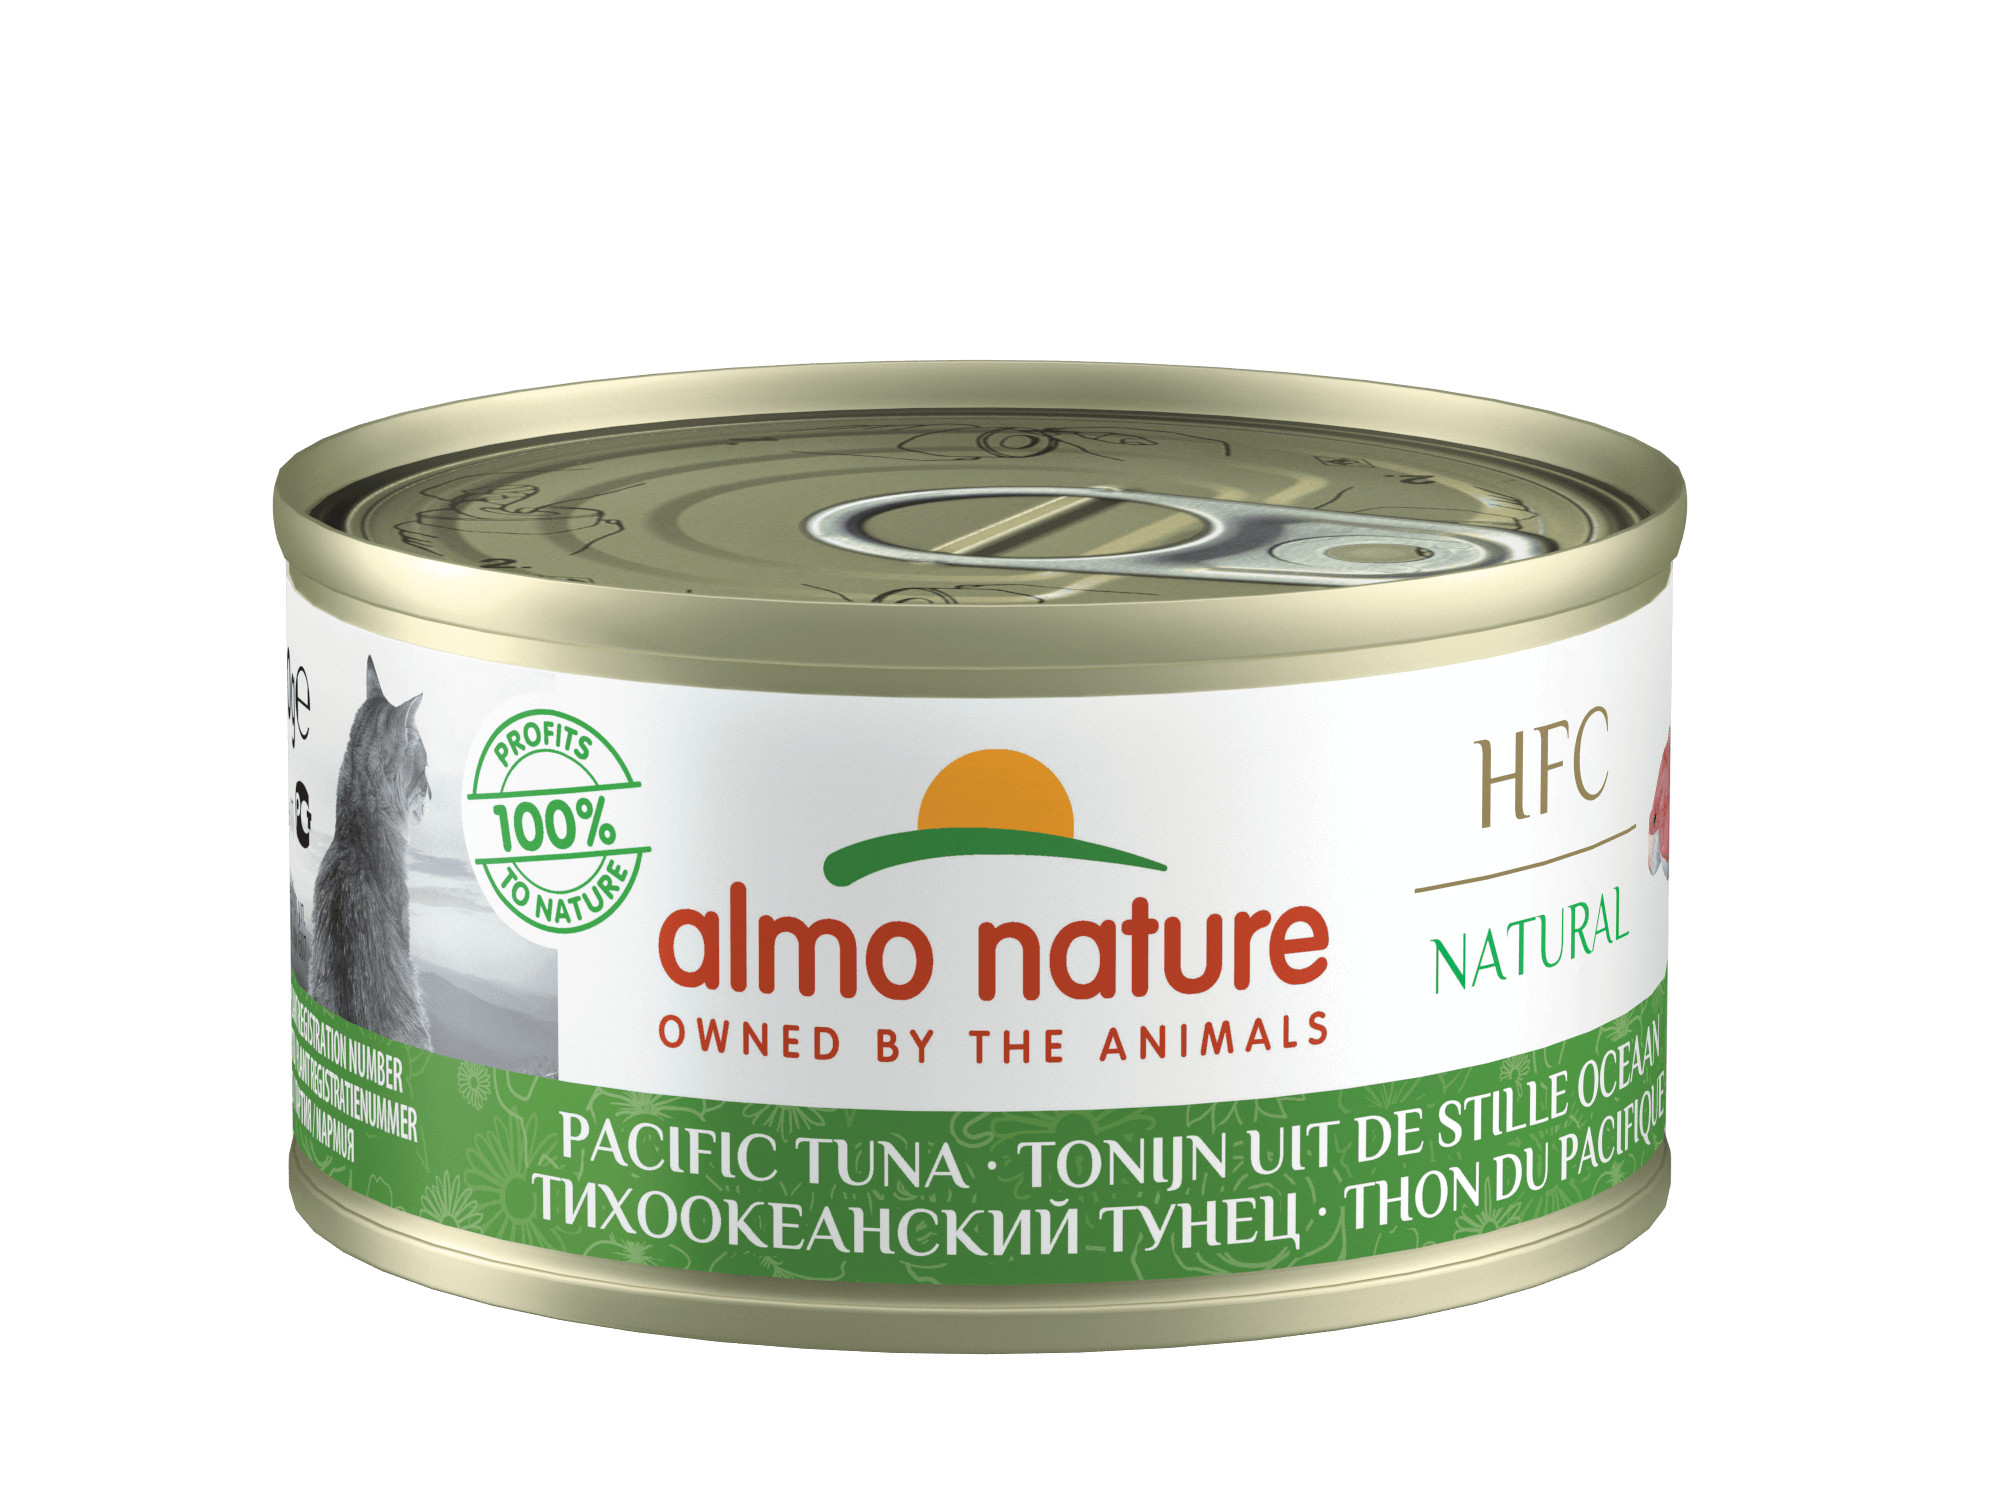 Almo Nature HFC Natural Tonijn uit Stille Oceaan (70 gr)